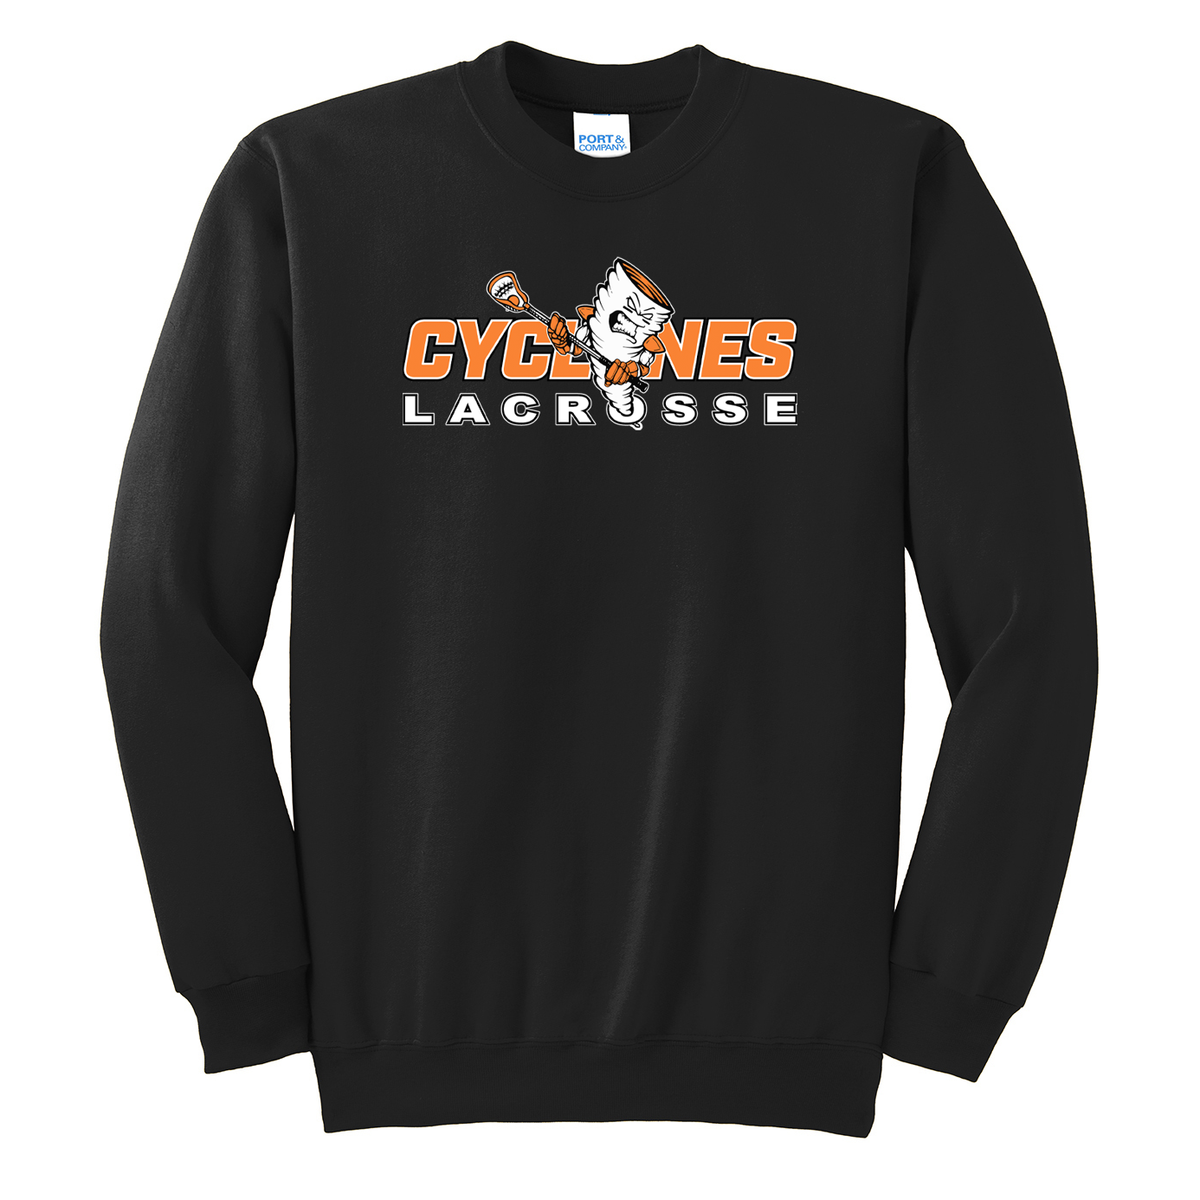 Cyclones Lacrosse Crew Neck Sweater